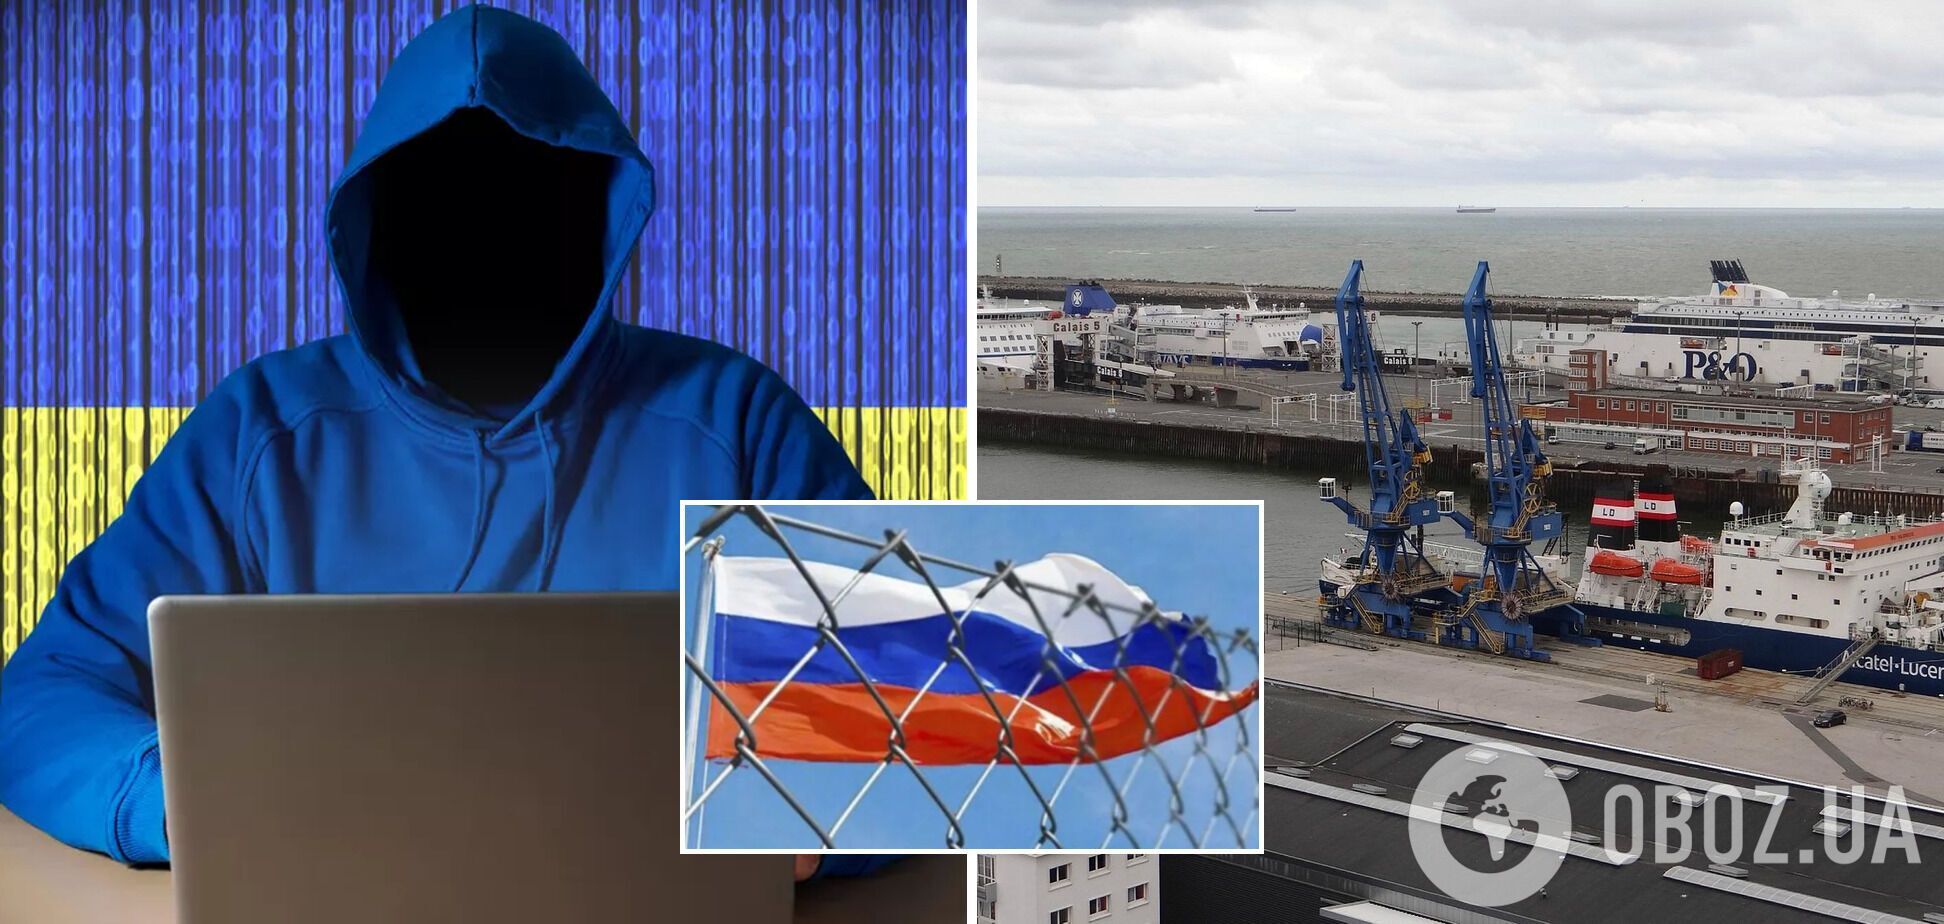 Украинские хакеры парализовали работу Информационно-координационного центра государственного портового контроля РФ